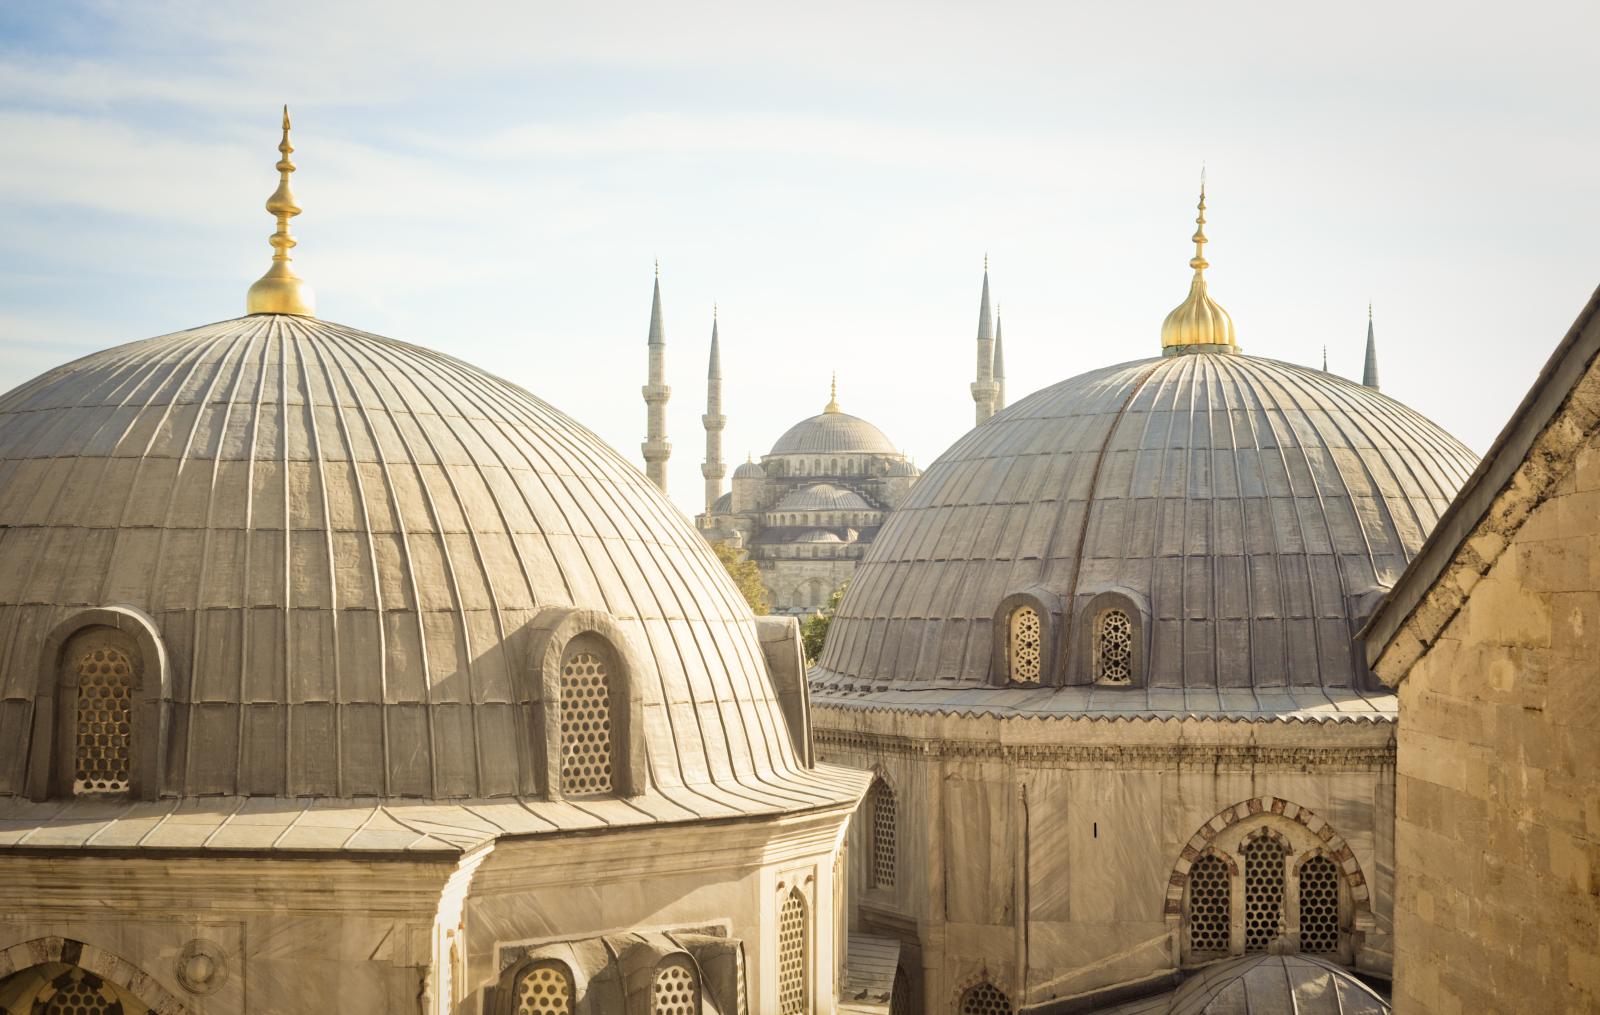 Hagia Sophia Minarets